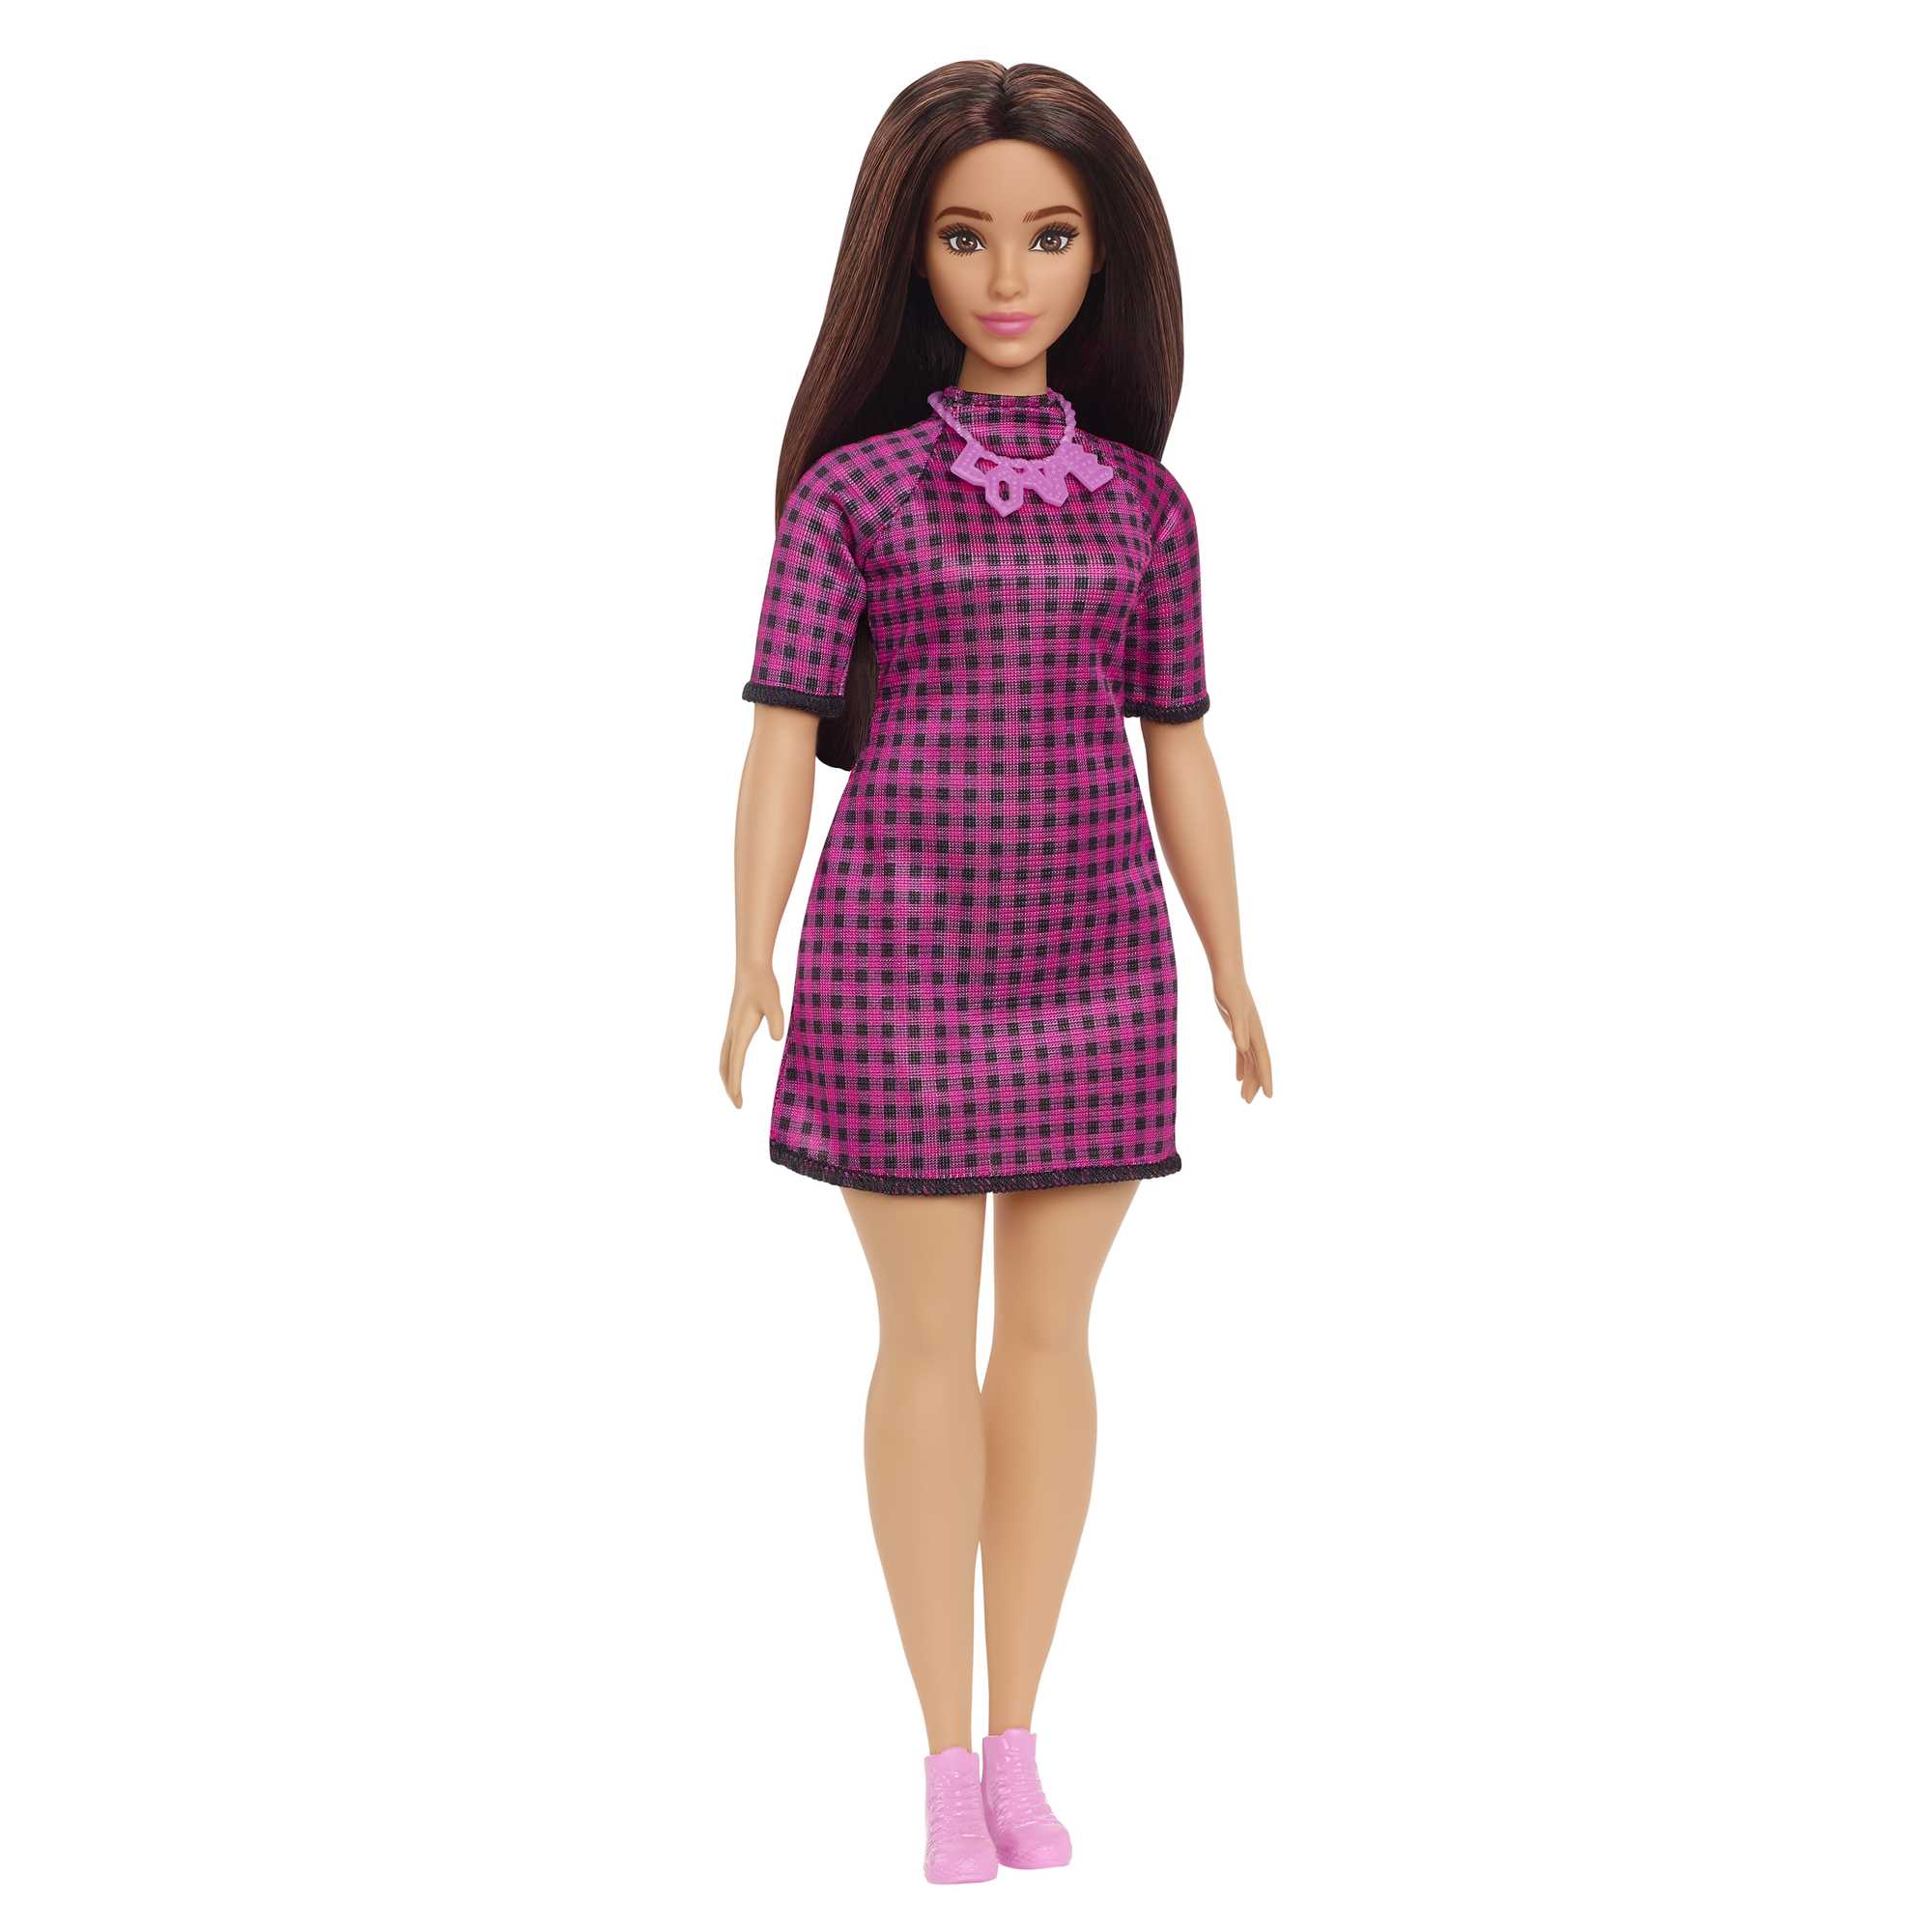 Кукла Mattel Barbie с длинными волосами брюнетка HBV20 игрушка сюприз mattel barbie кукла челси с аксессуарами пикник 6 серия hkt8